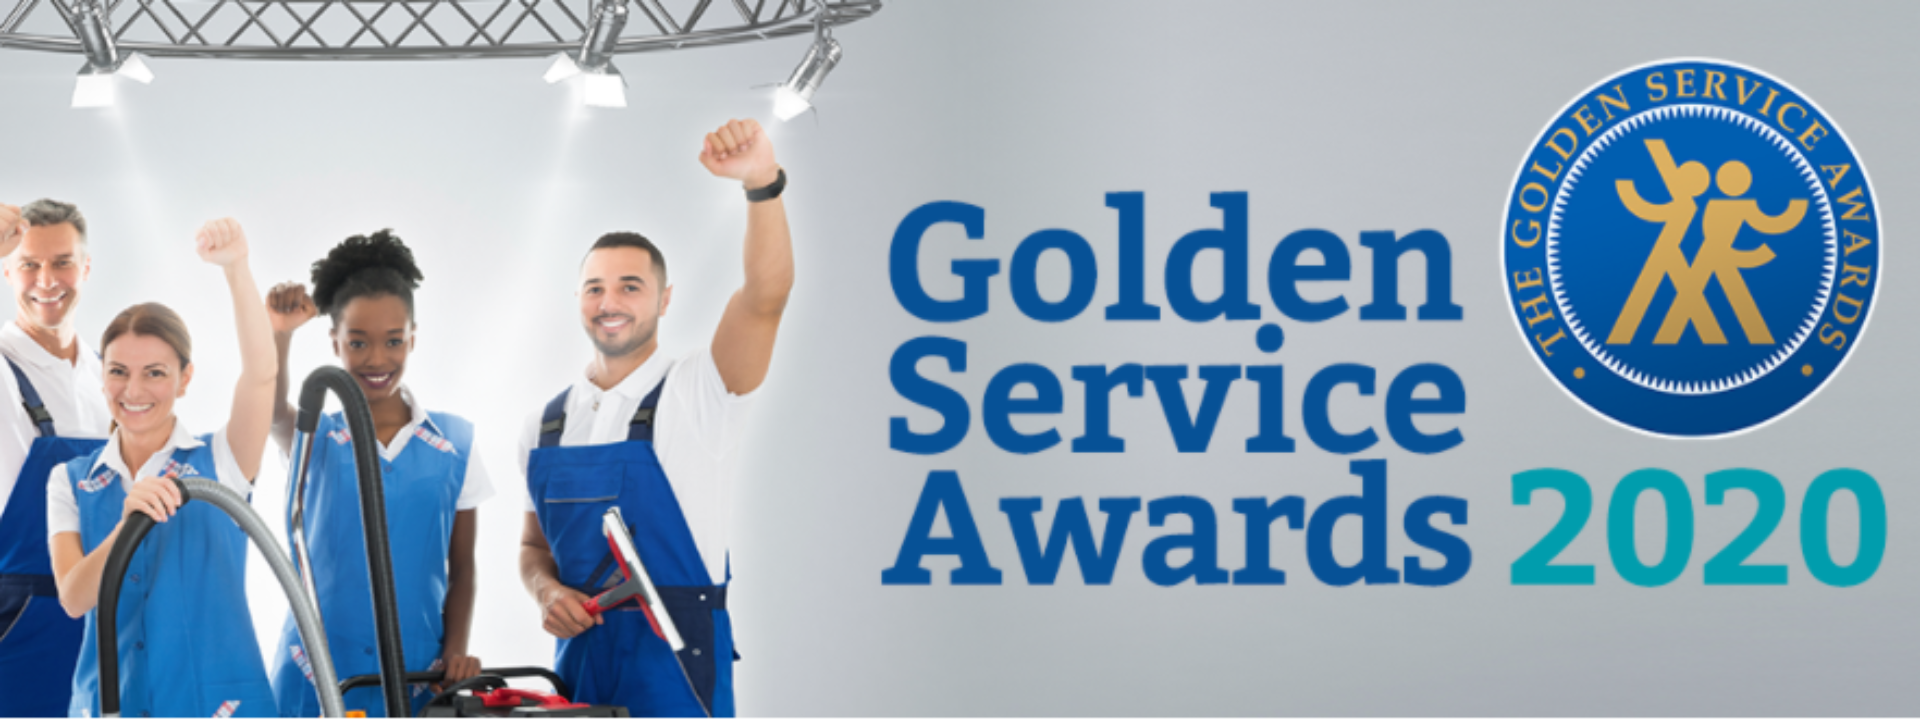 De finalisten van de Golden Service Awards zijn bekend!